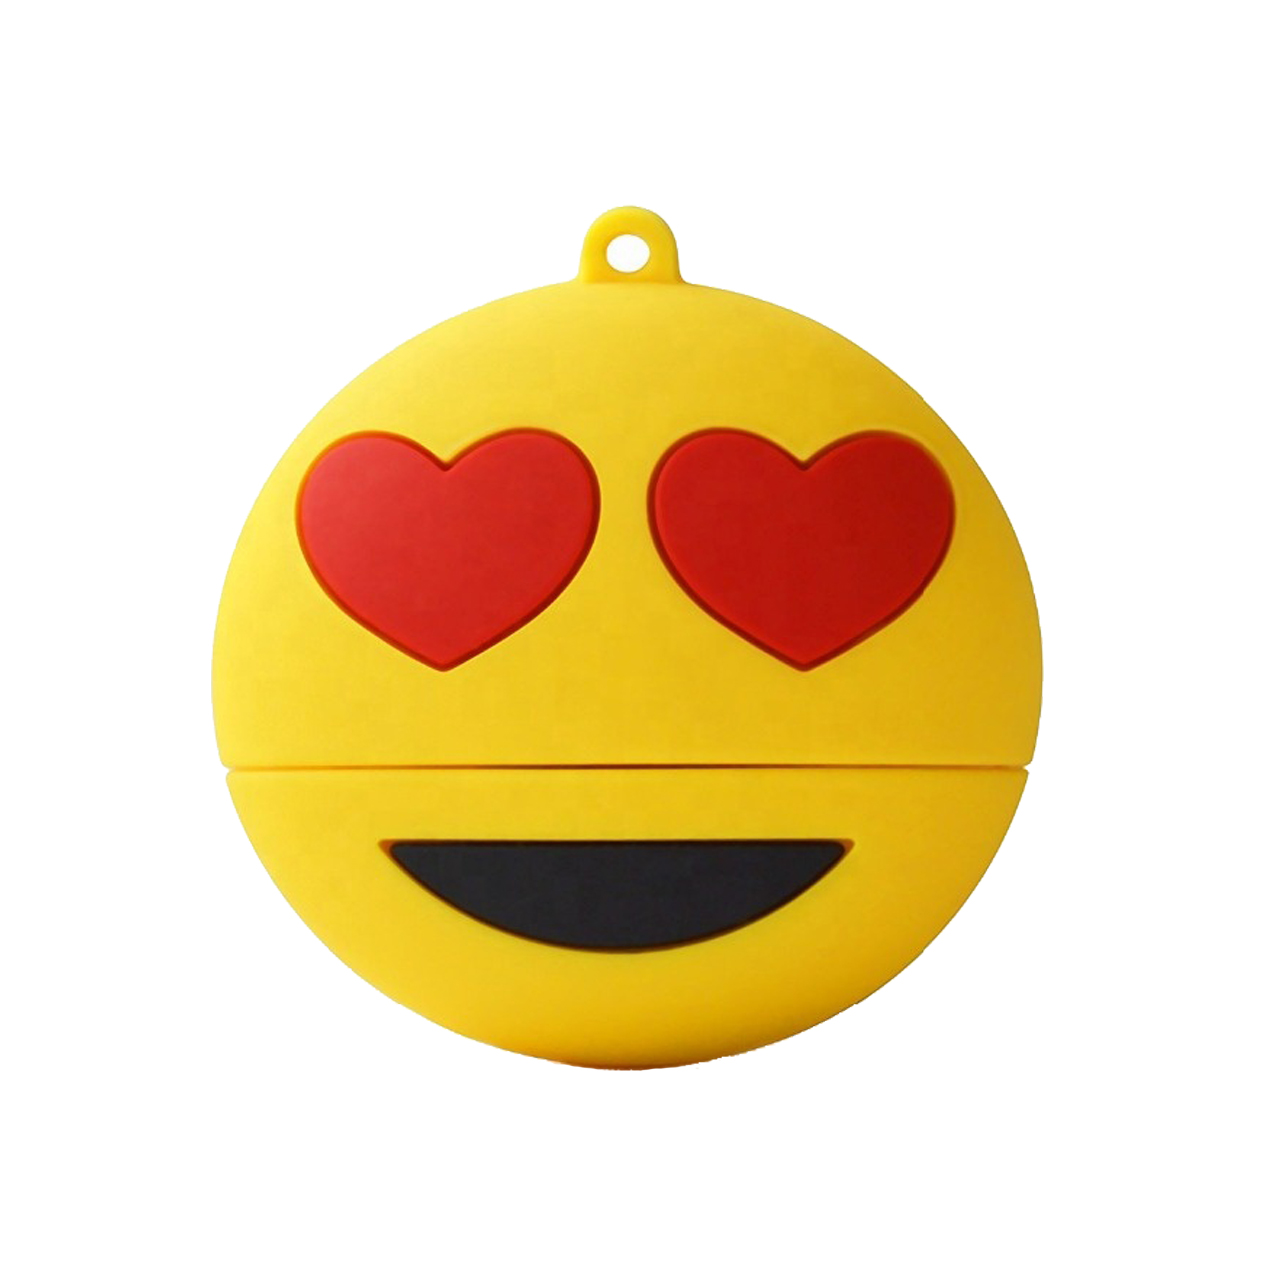 فلش مموری طرح ایموجی عشق مدل Ul-Emoji03 ظرفیت 16 گیگابایت